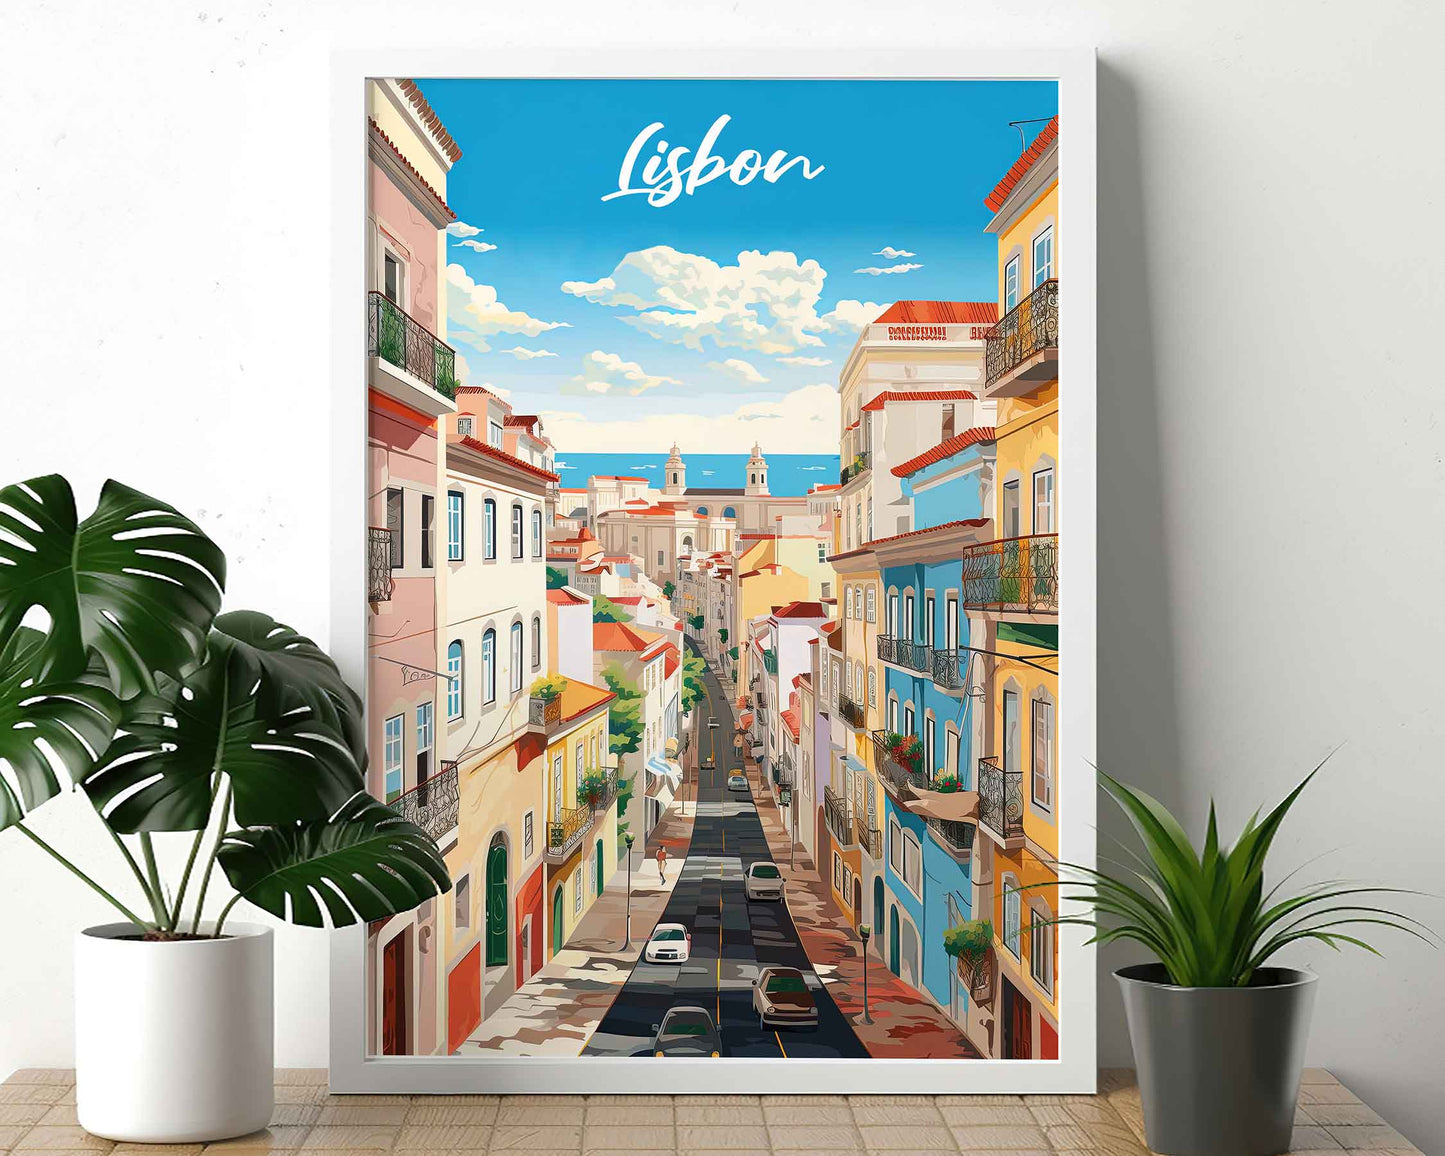 Framed Image of Lisbon Travel Poster Prints Portugal Illustration Wall Art